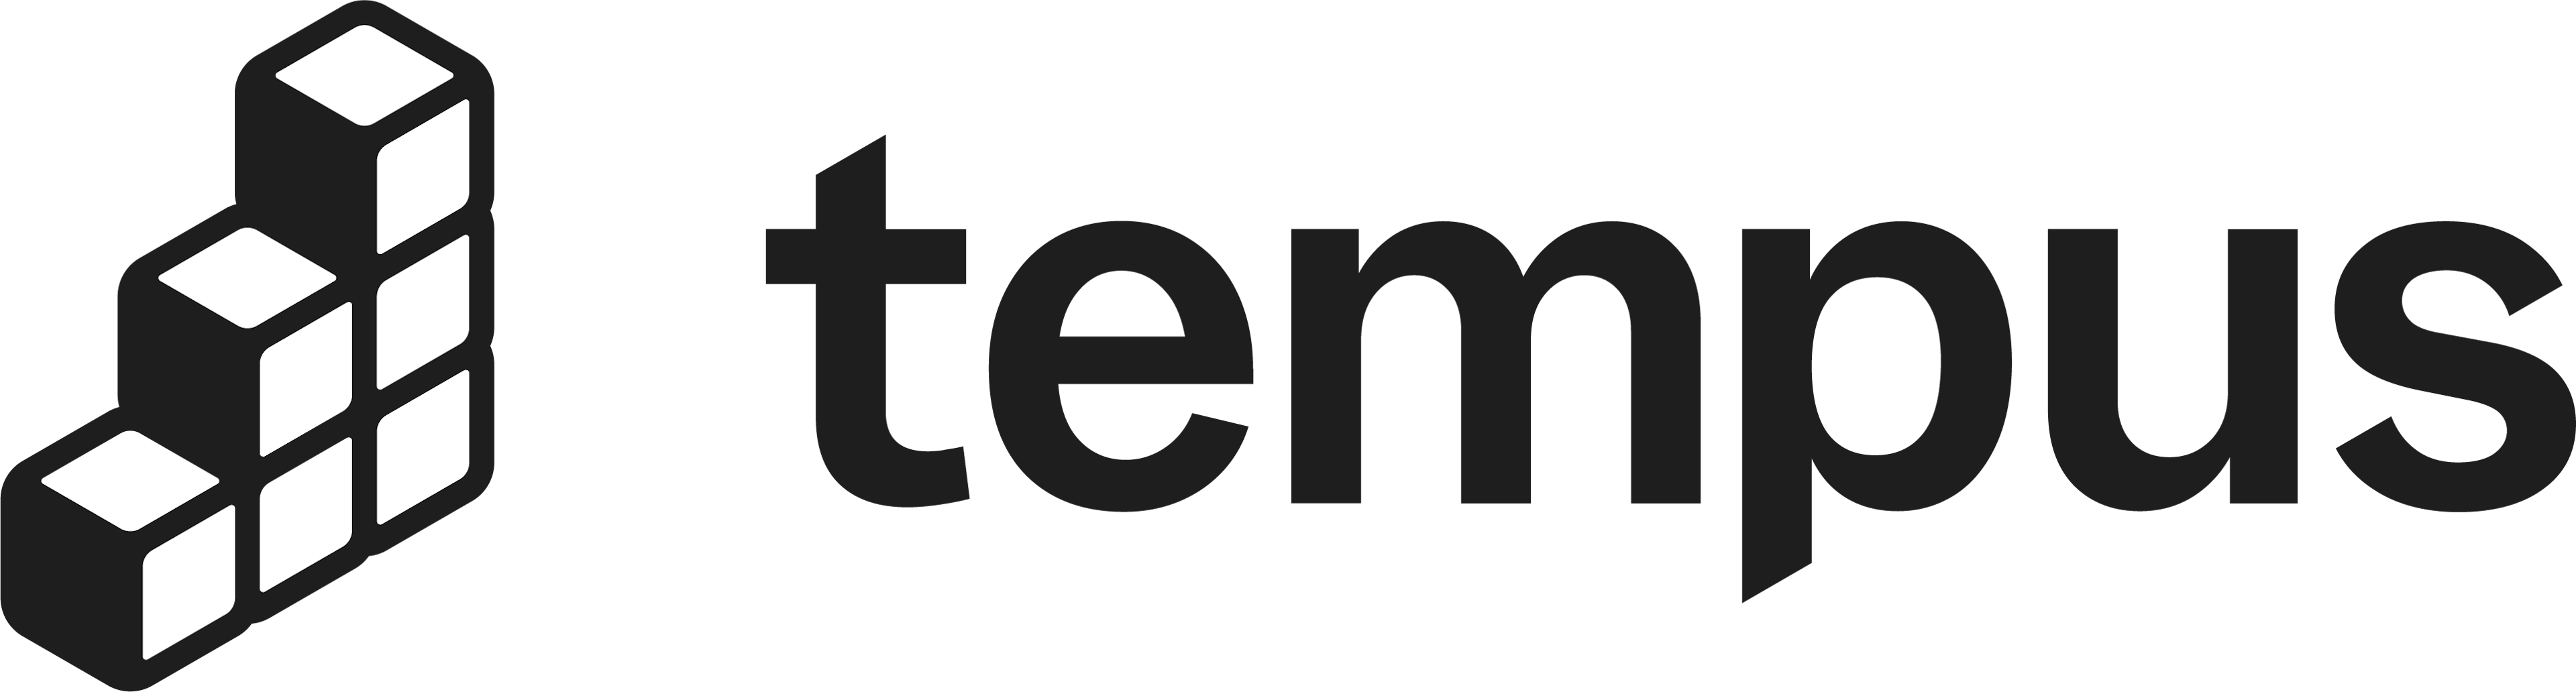 tempus-logo